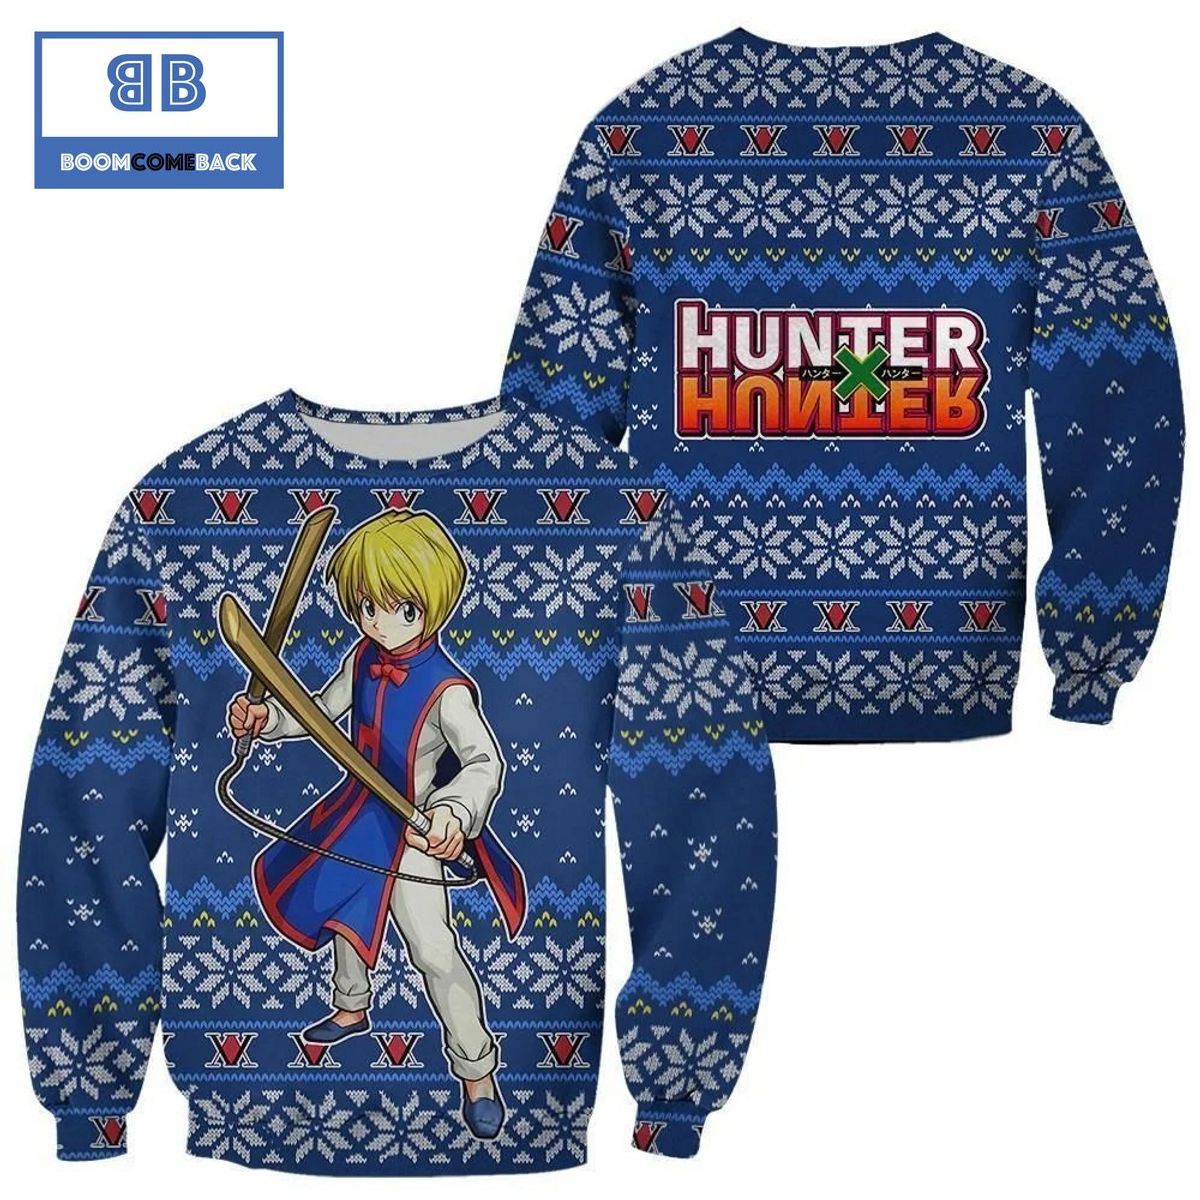 Kurapika Hunter x Hunter Anime Ugly Christmas Sweater